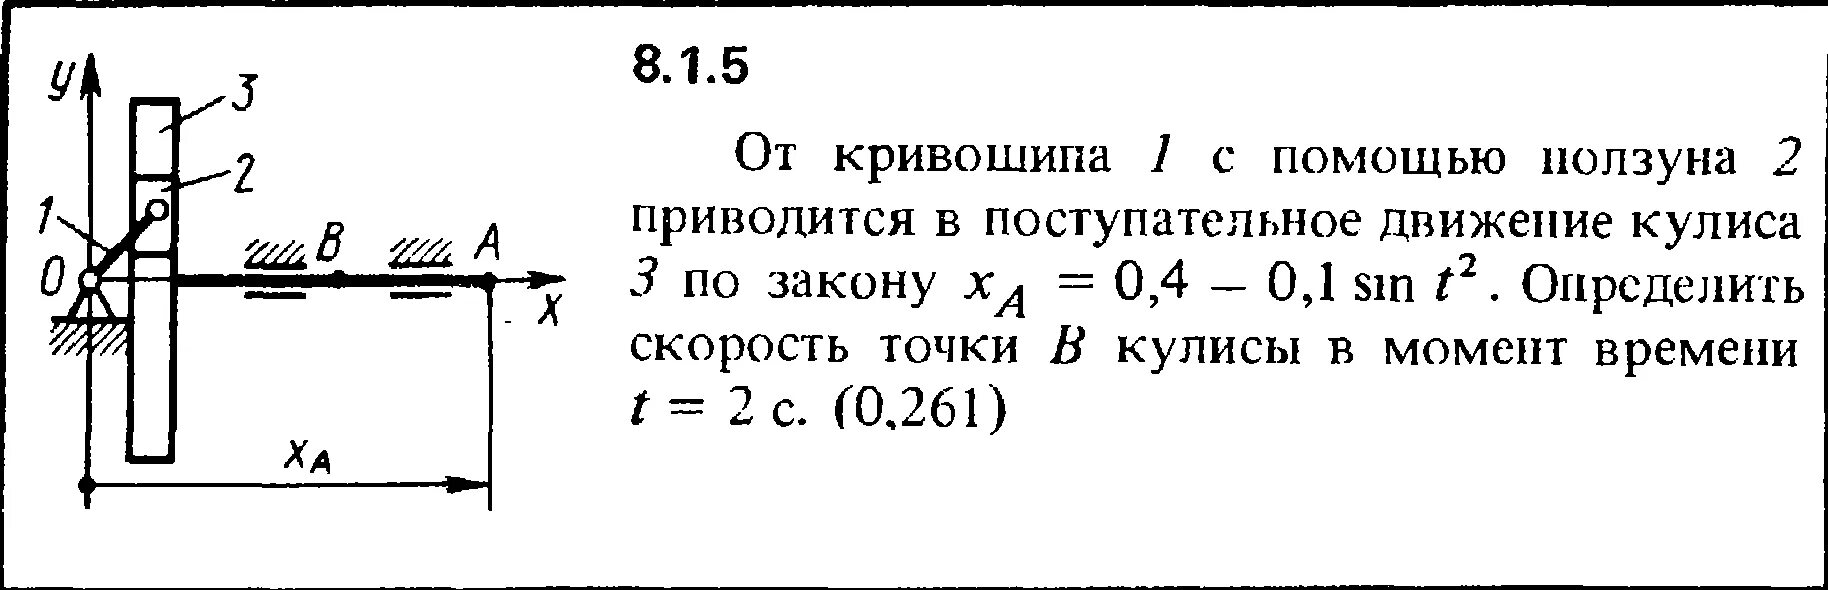 Задание 8 no 36. Кепе задача 8.1.11. Поступательное движение ползуна. Решение задачи 2.1.13 из сборника Кепе о.е. 1989 года. Задание 8 №311463.